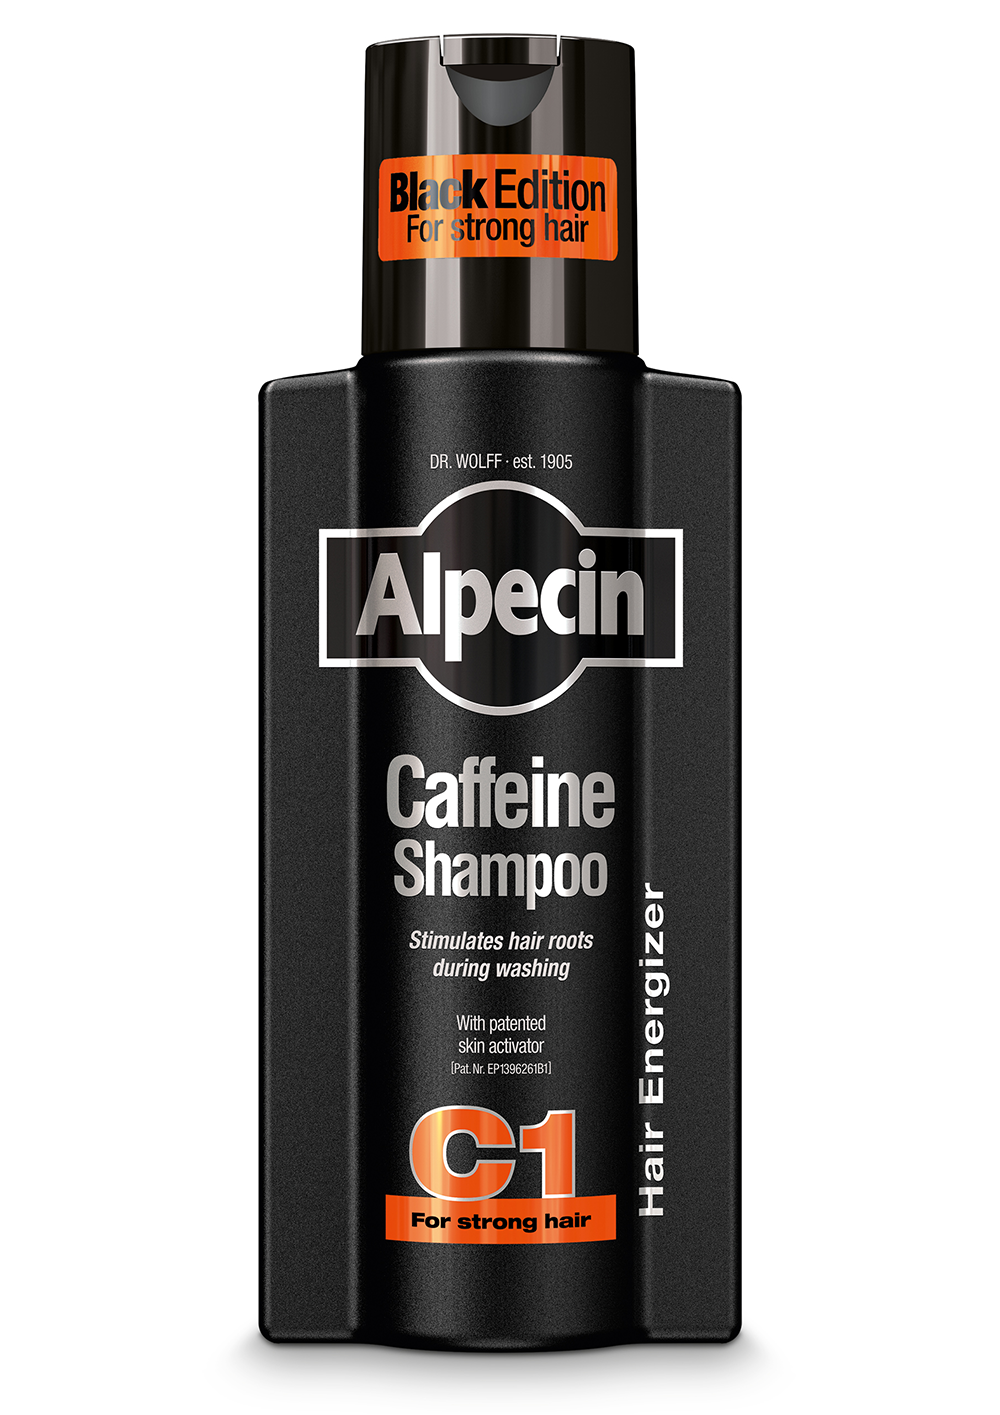 alpecin caffeine szampon do włosów c1